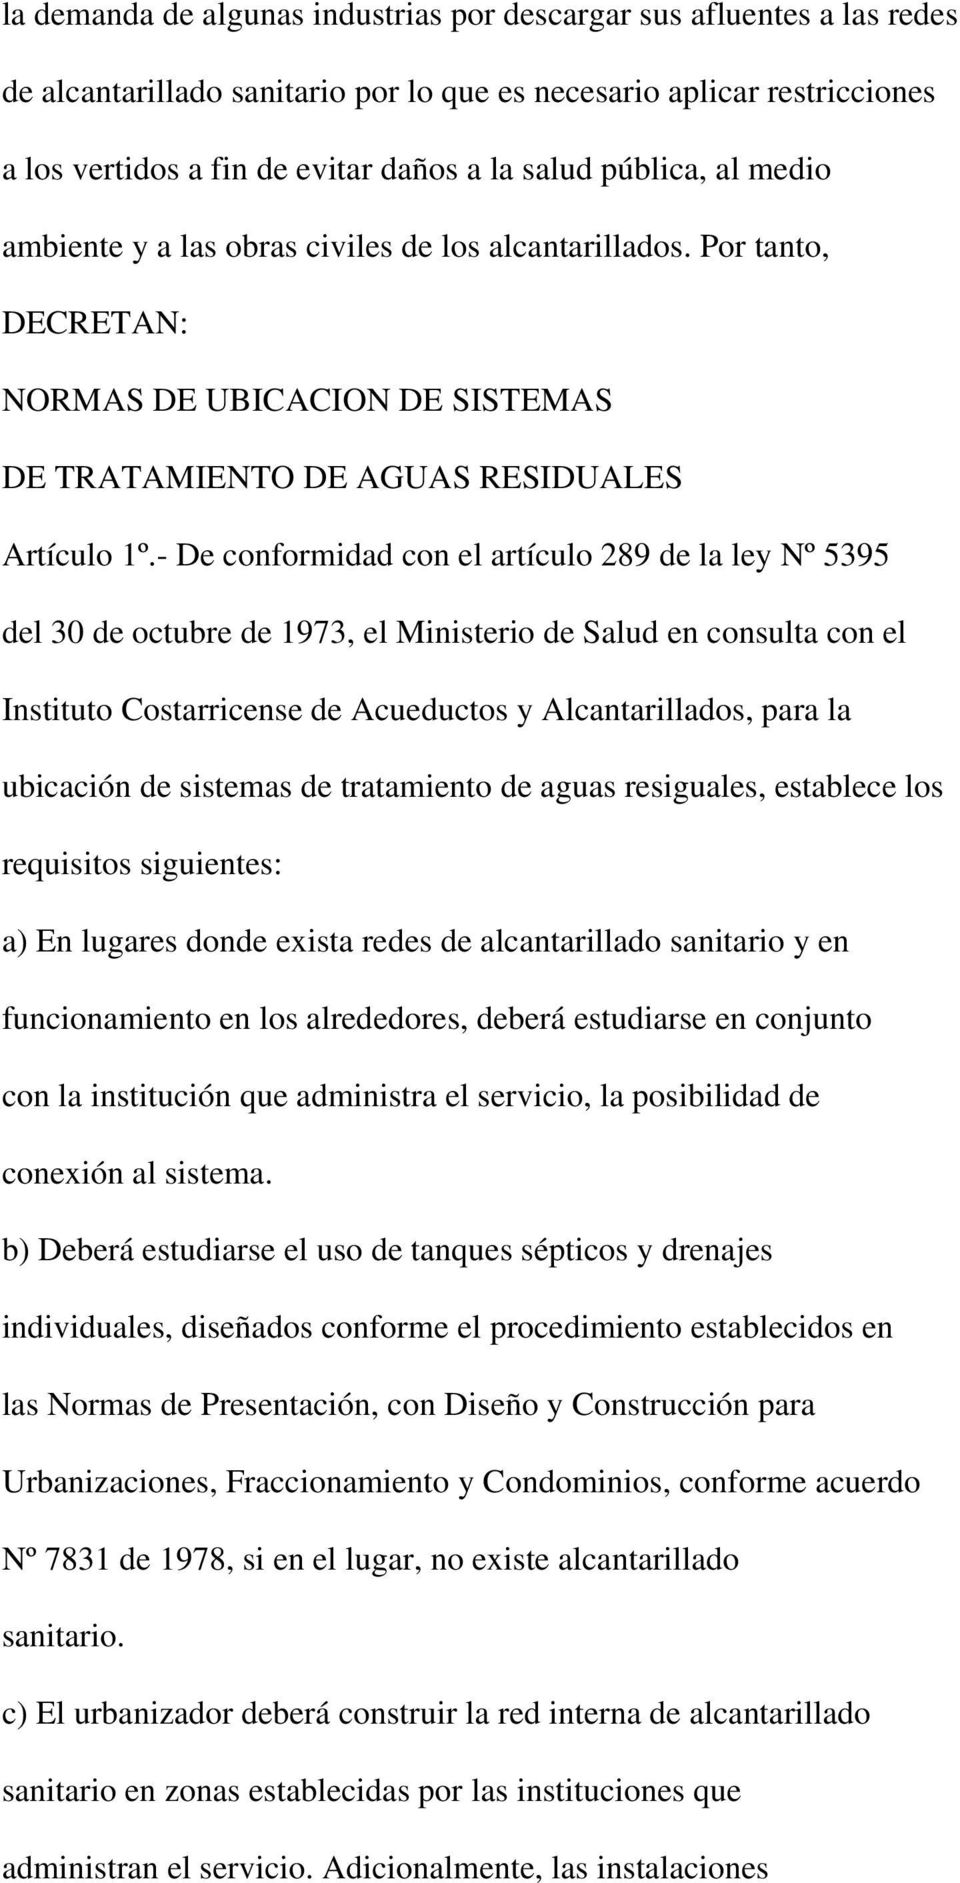 - De conformidad con el artículo 289 de la ley Nº 5395 del 30 de octubre de 1973, el Ministerio de Salud en consulta con el Instituto Costarricense de Acueductos y Alcantarillados, para la ubicación